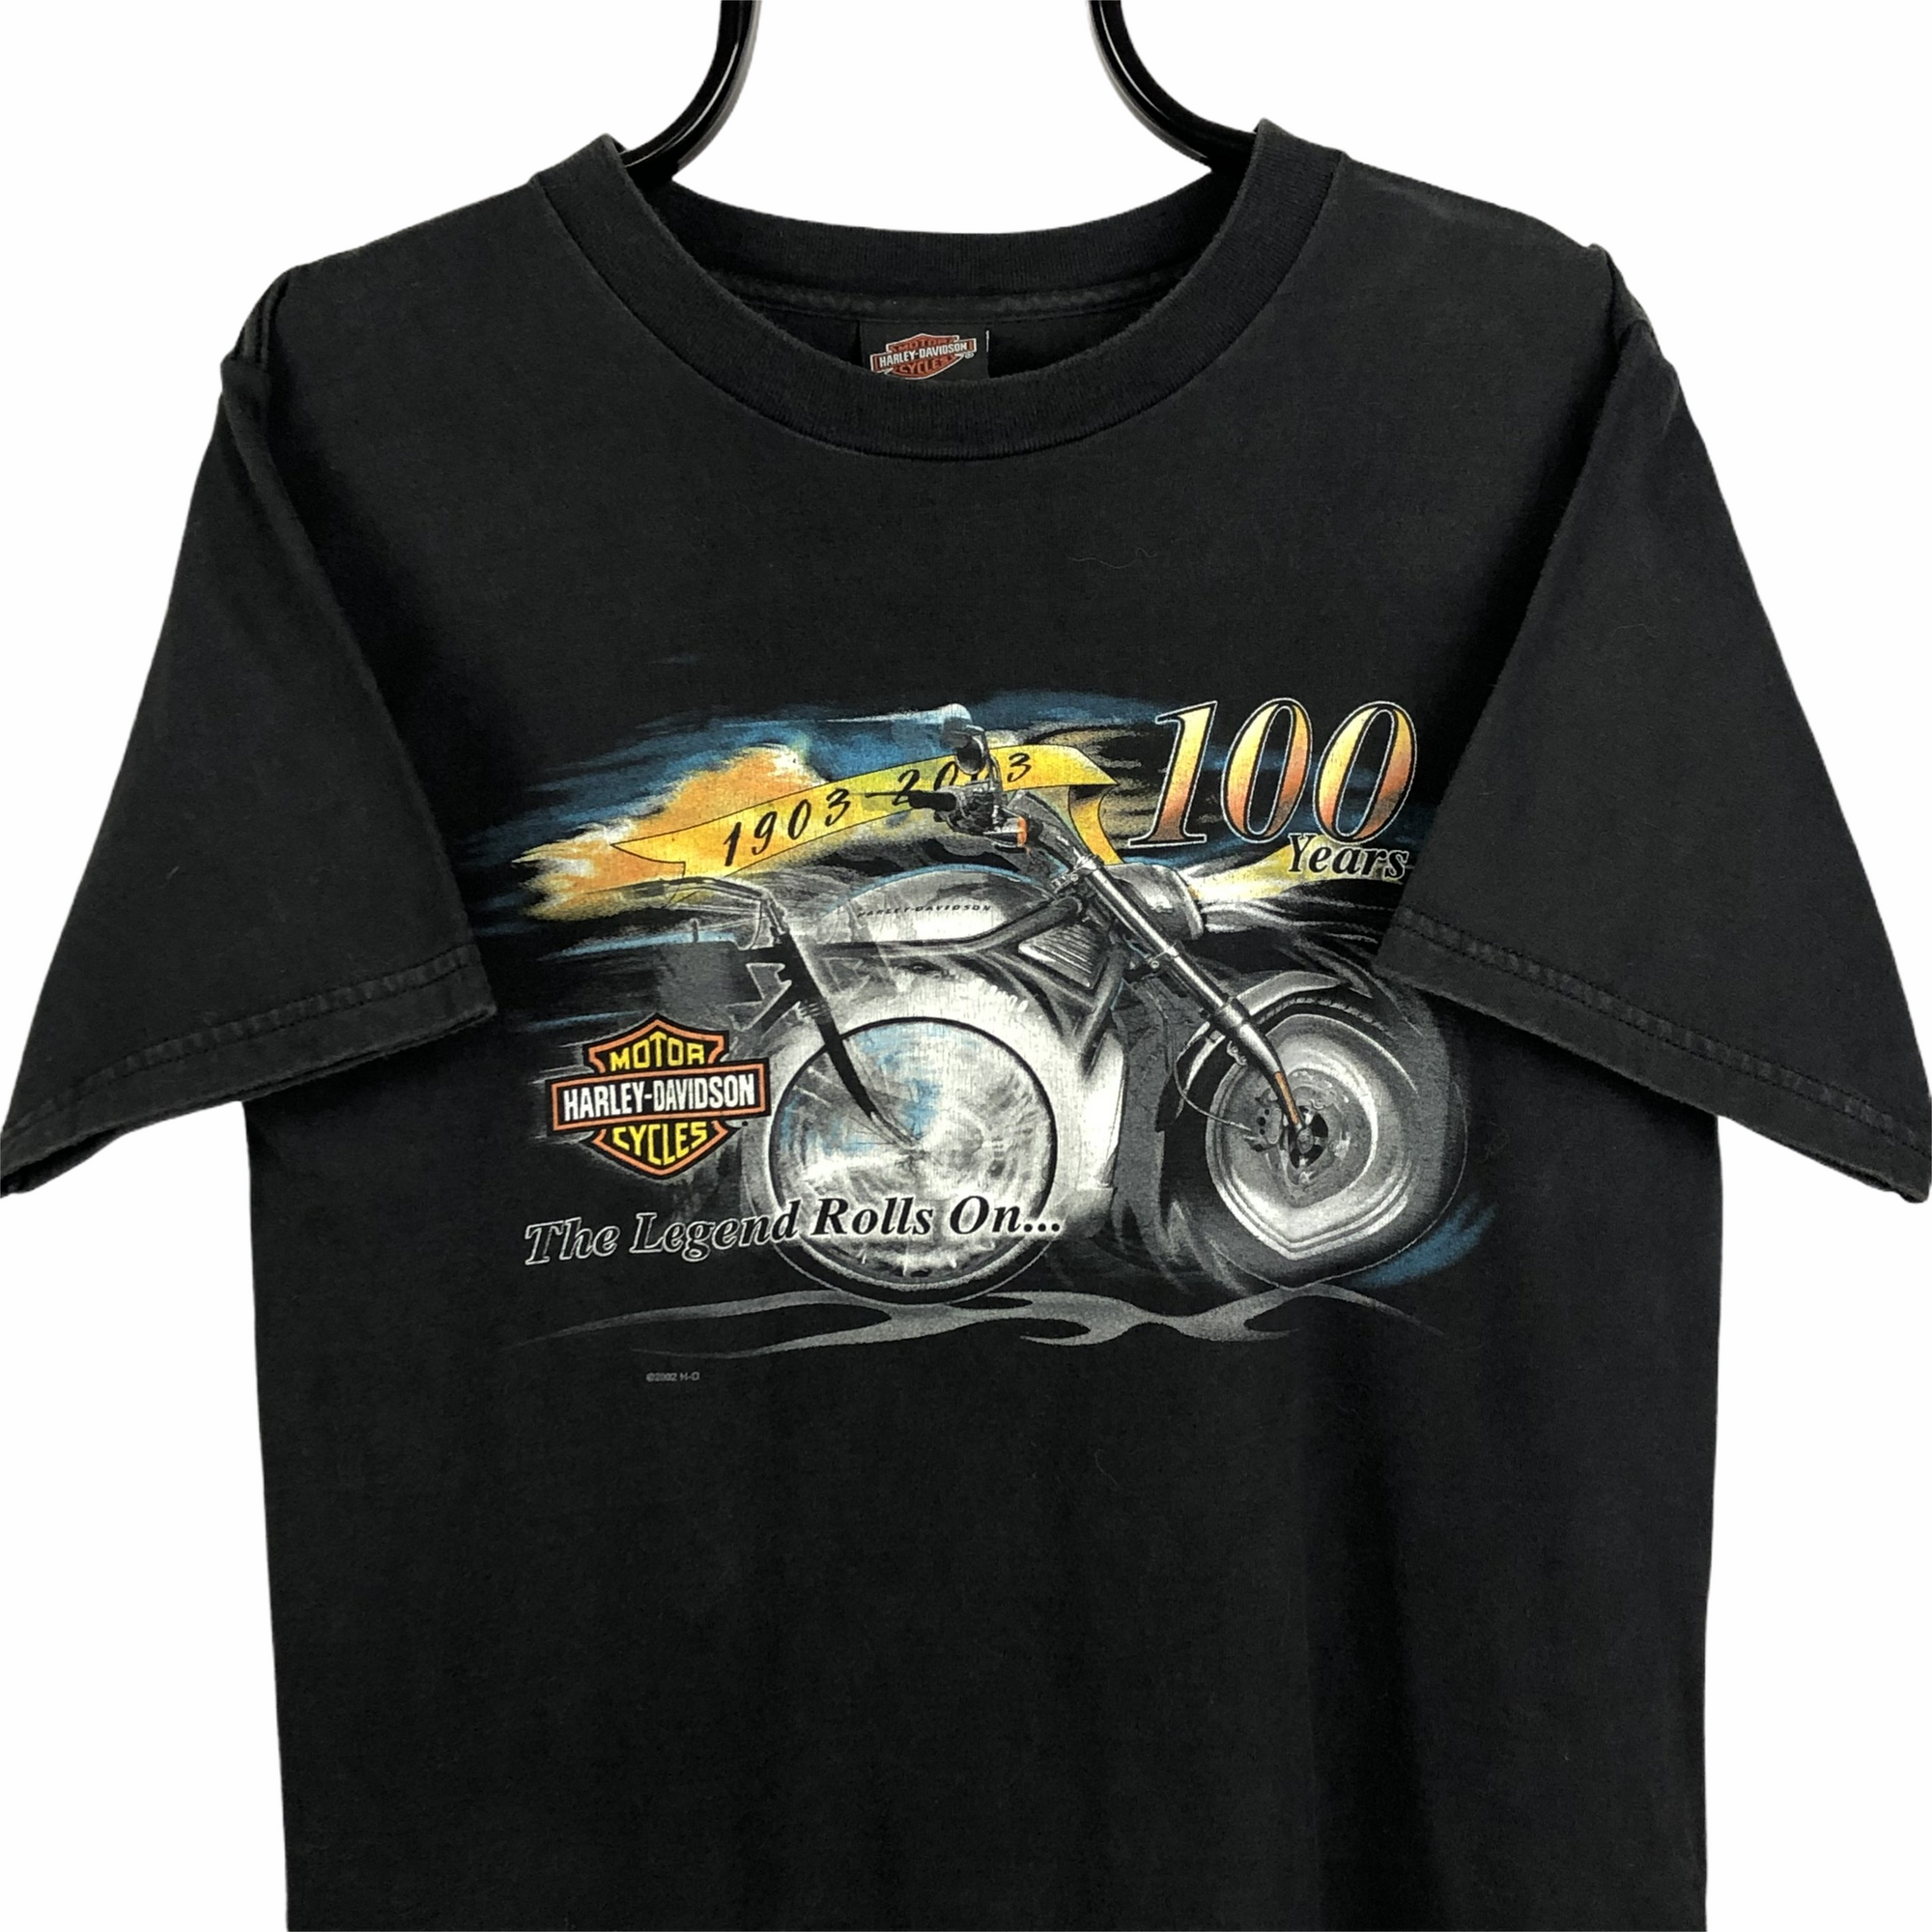 Harley Davidson 100 Years Tee - Men's Medium/Women's Large